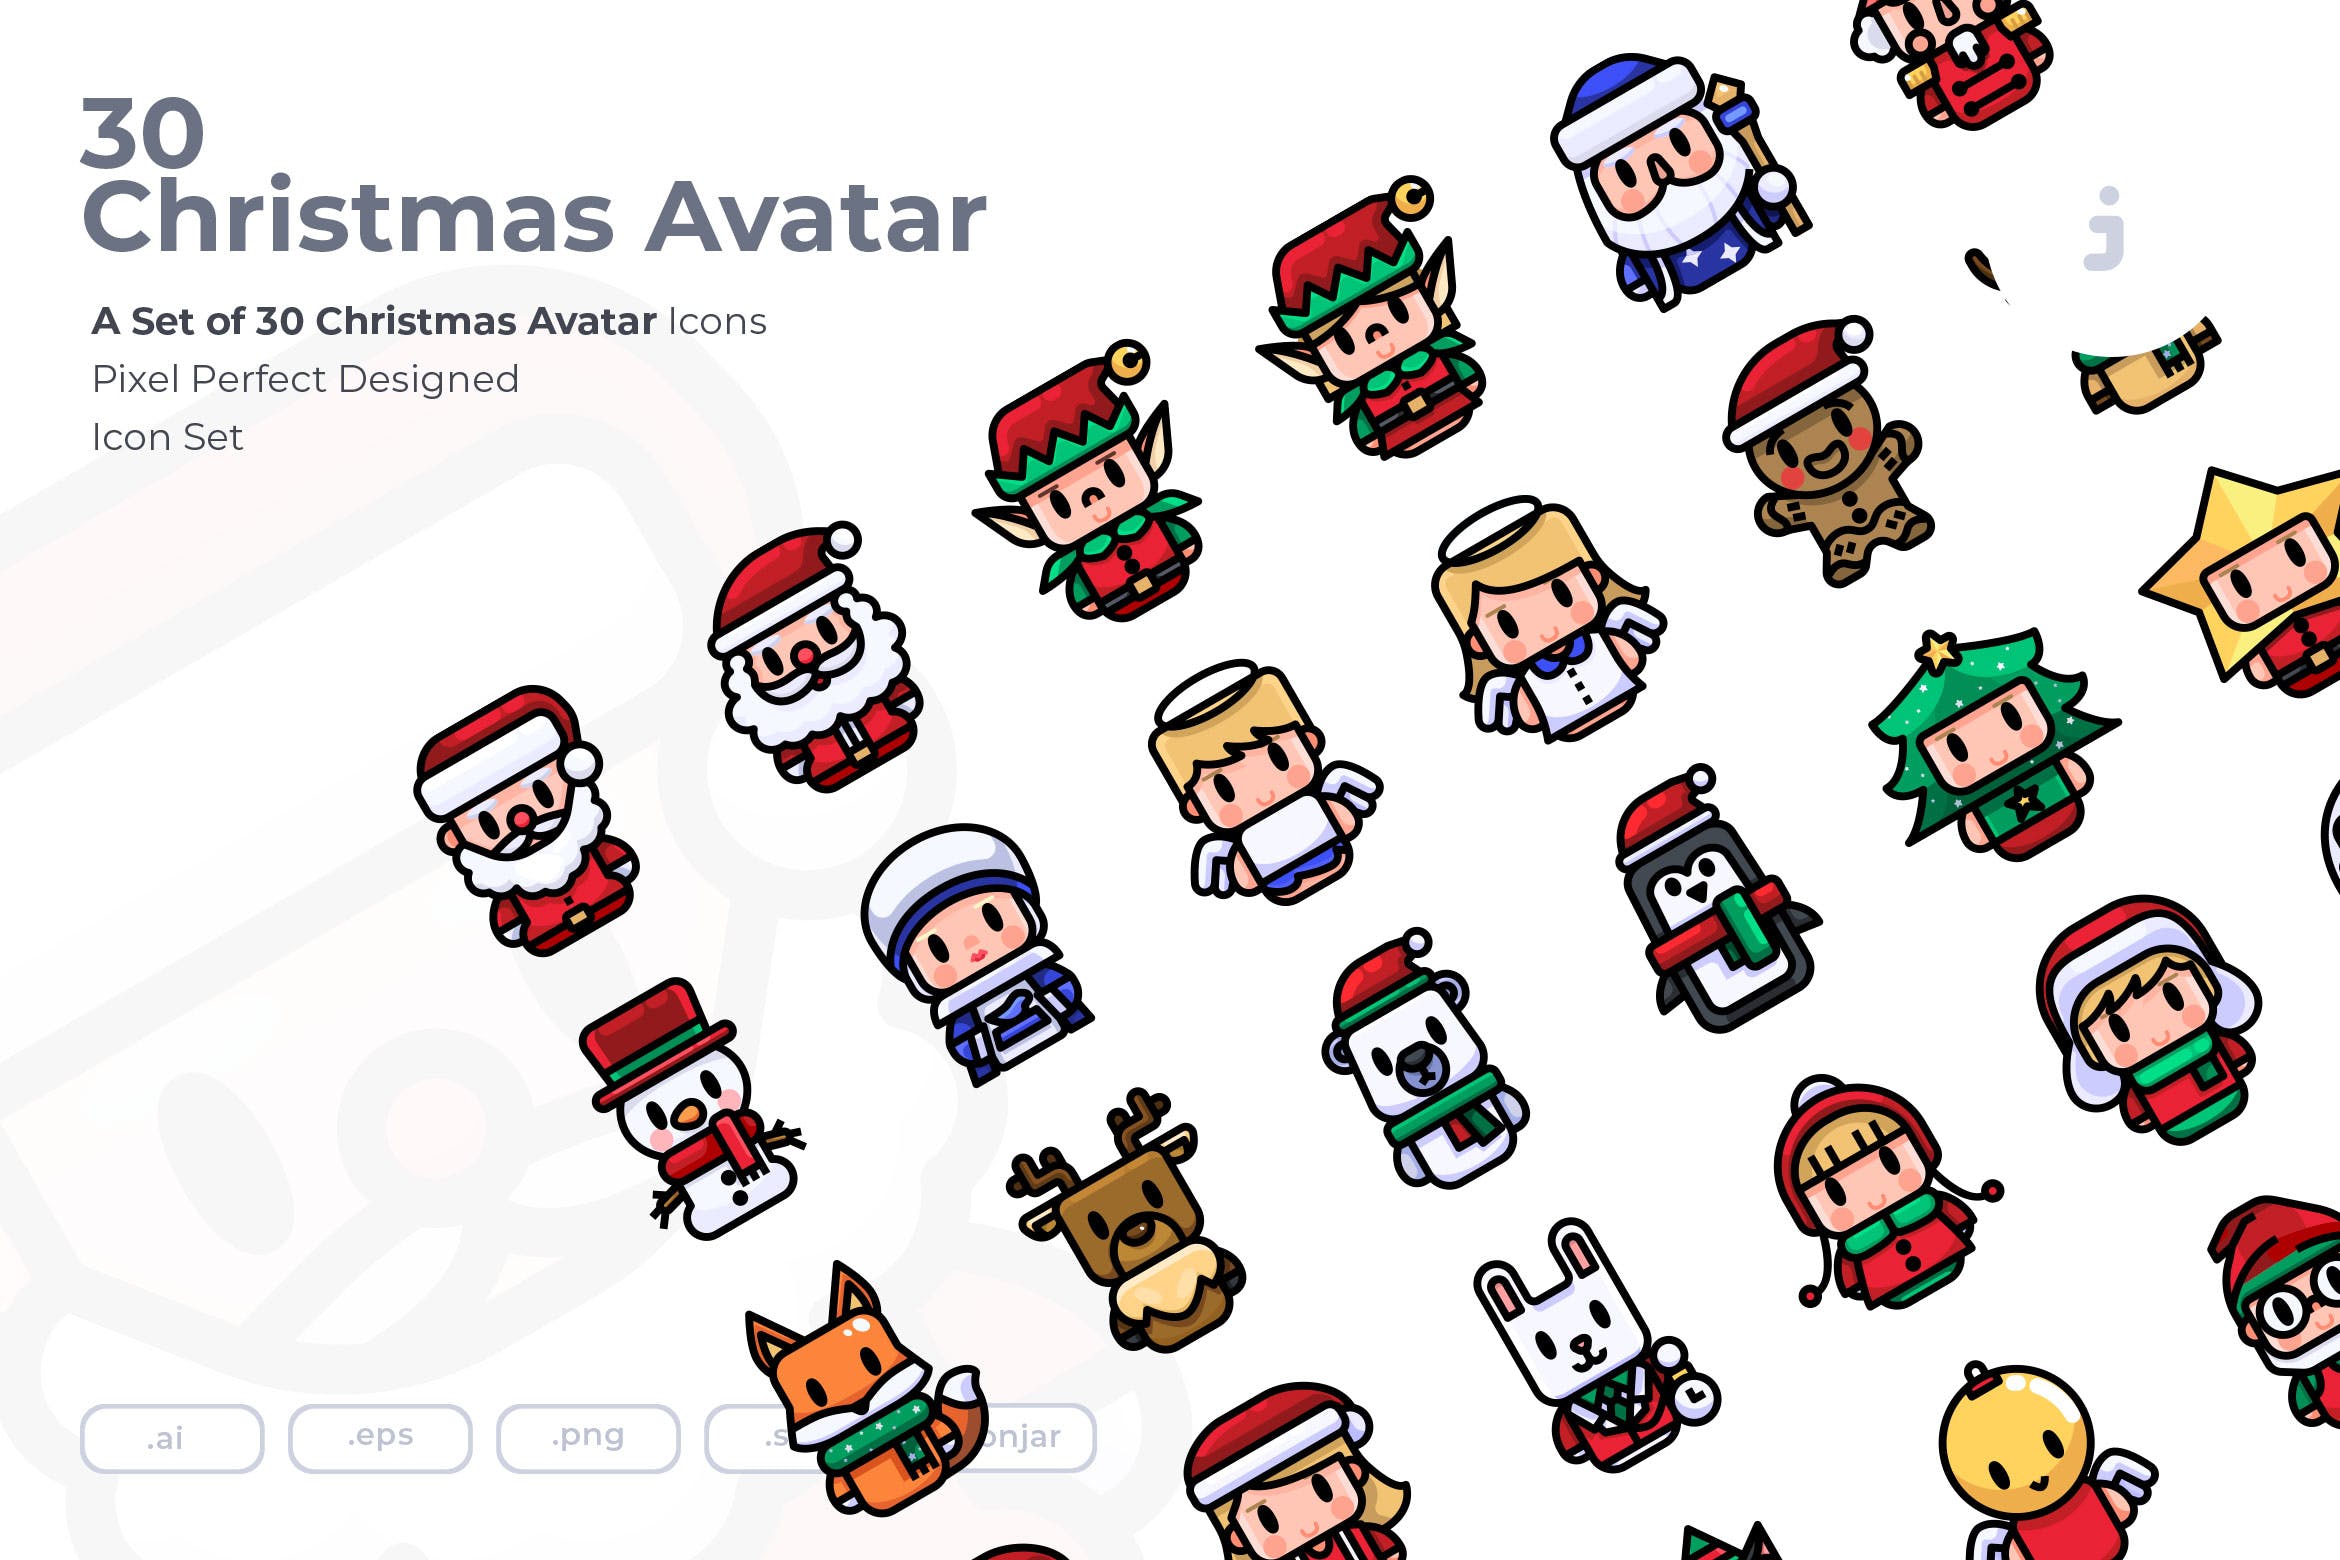 30枚圣诞主题人物头像图标素材 30 Christmas Avatar Icons插图